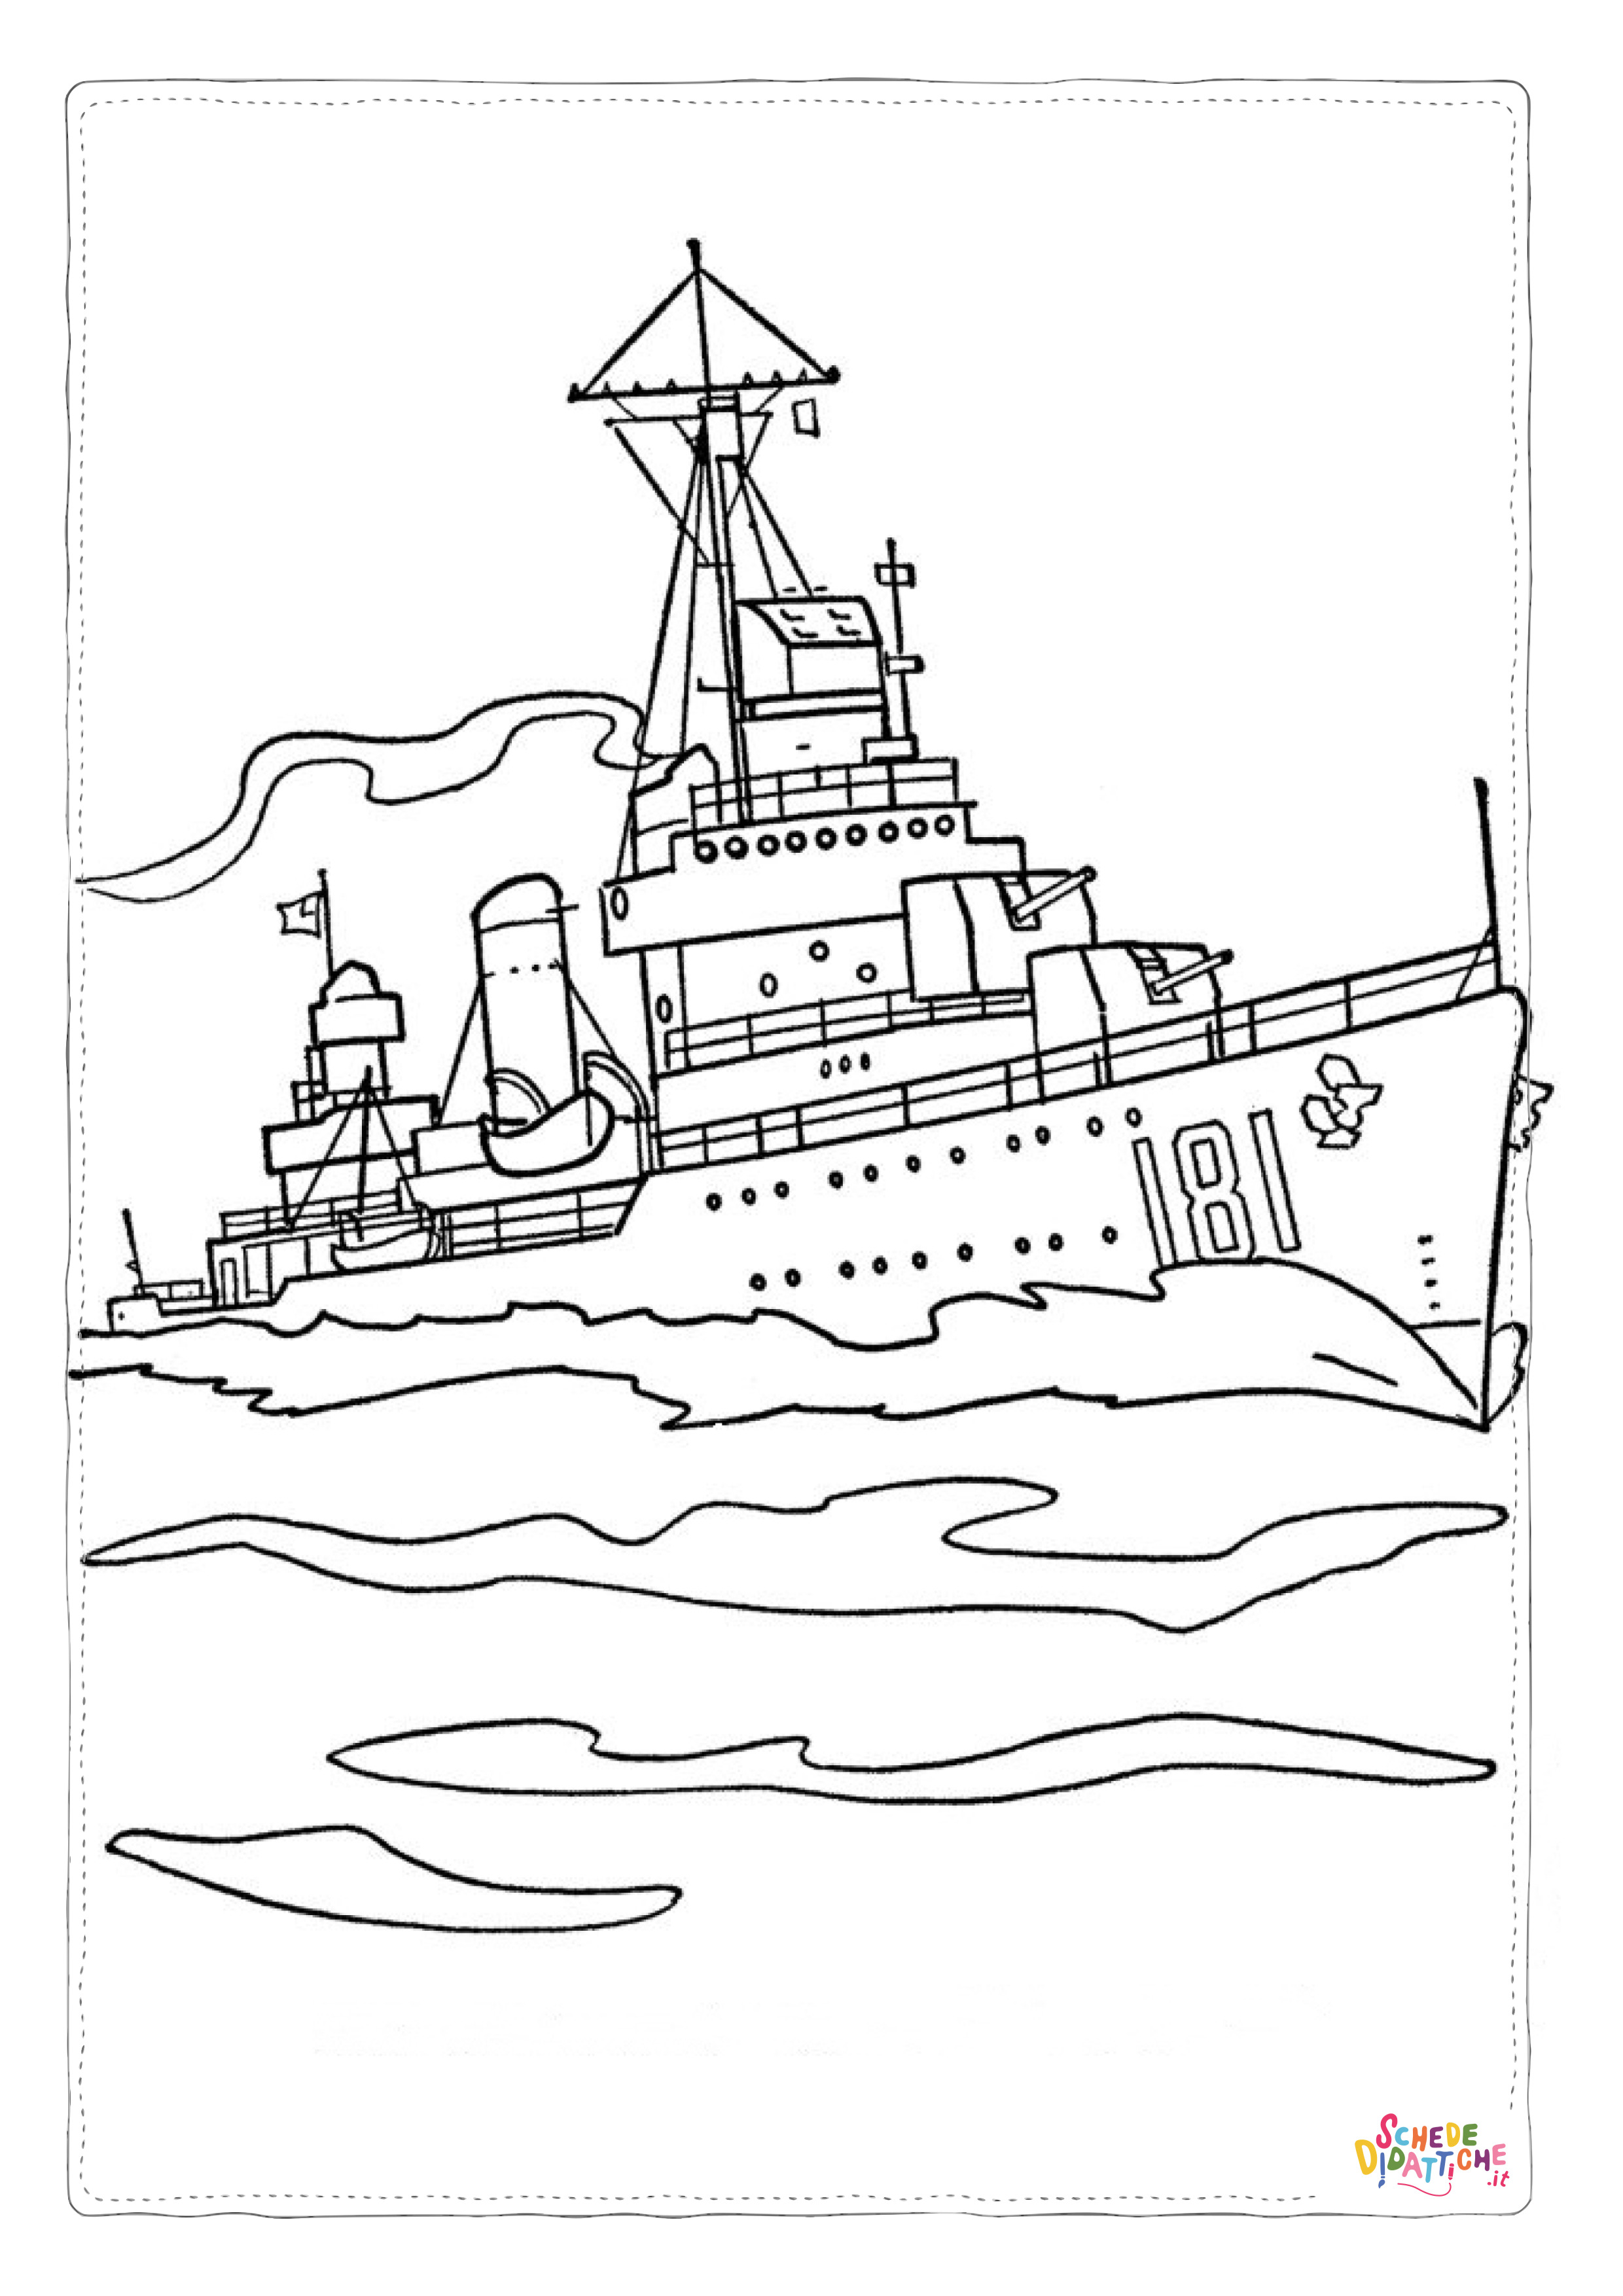 Disegno di nave militare da stampare e colorare 1